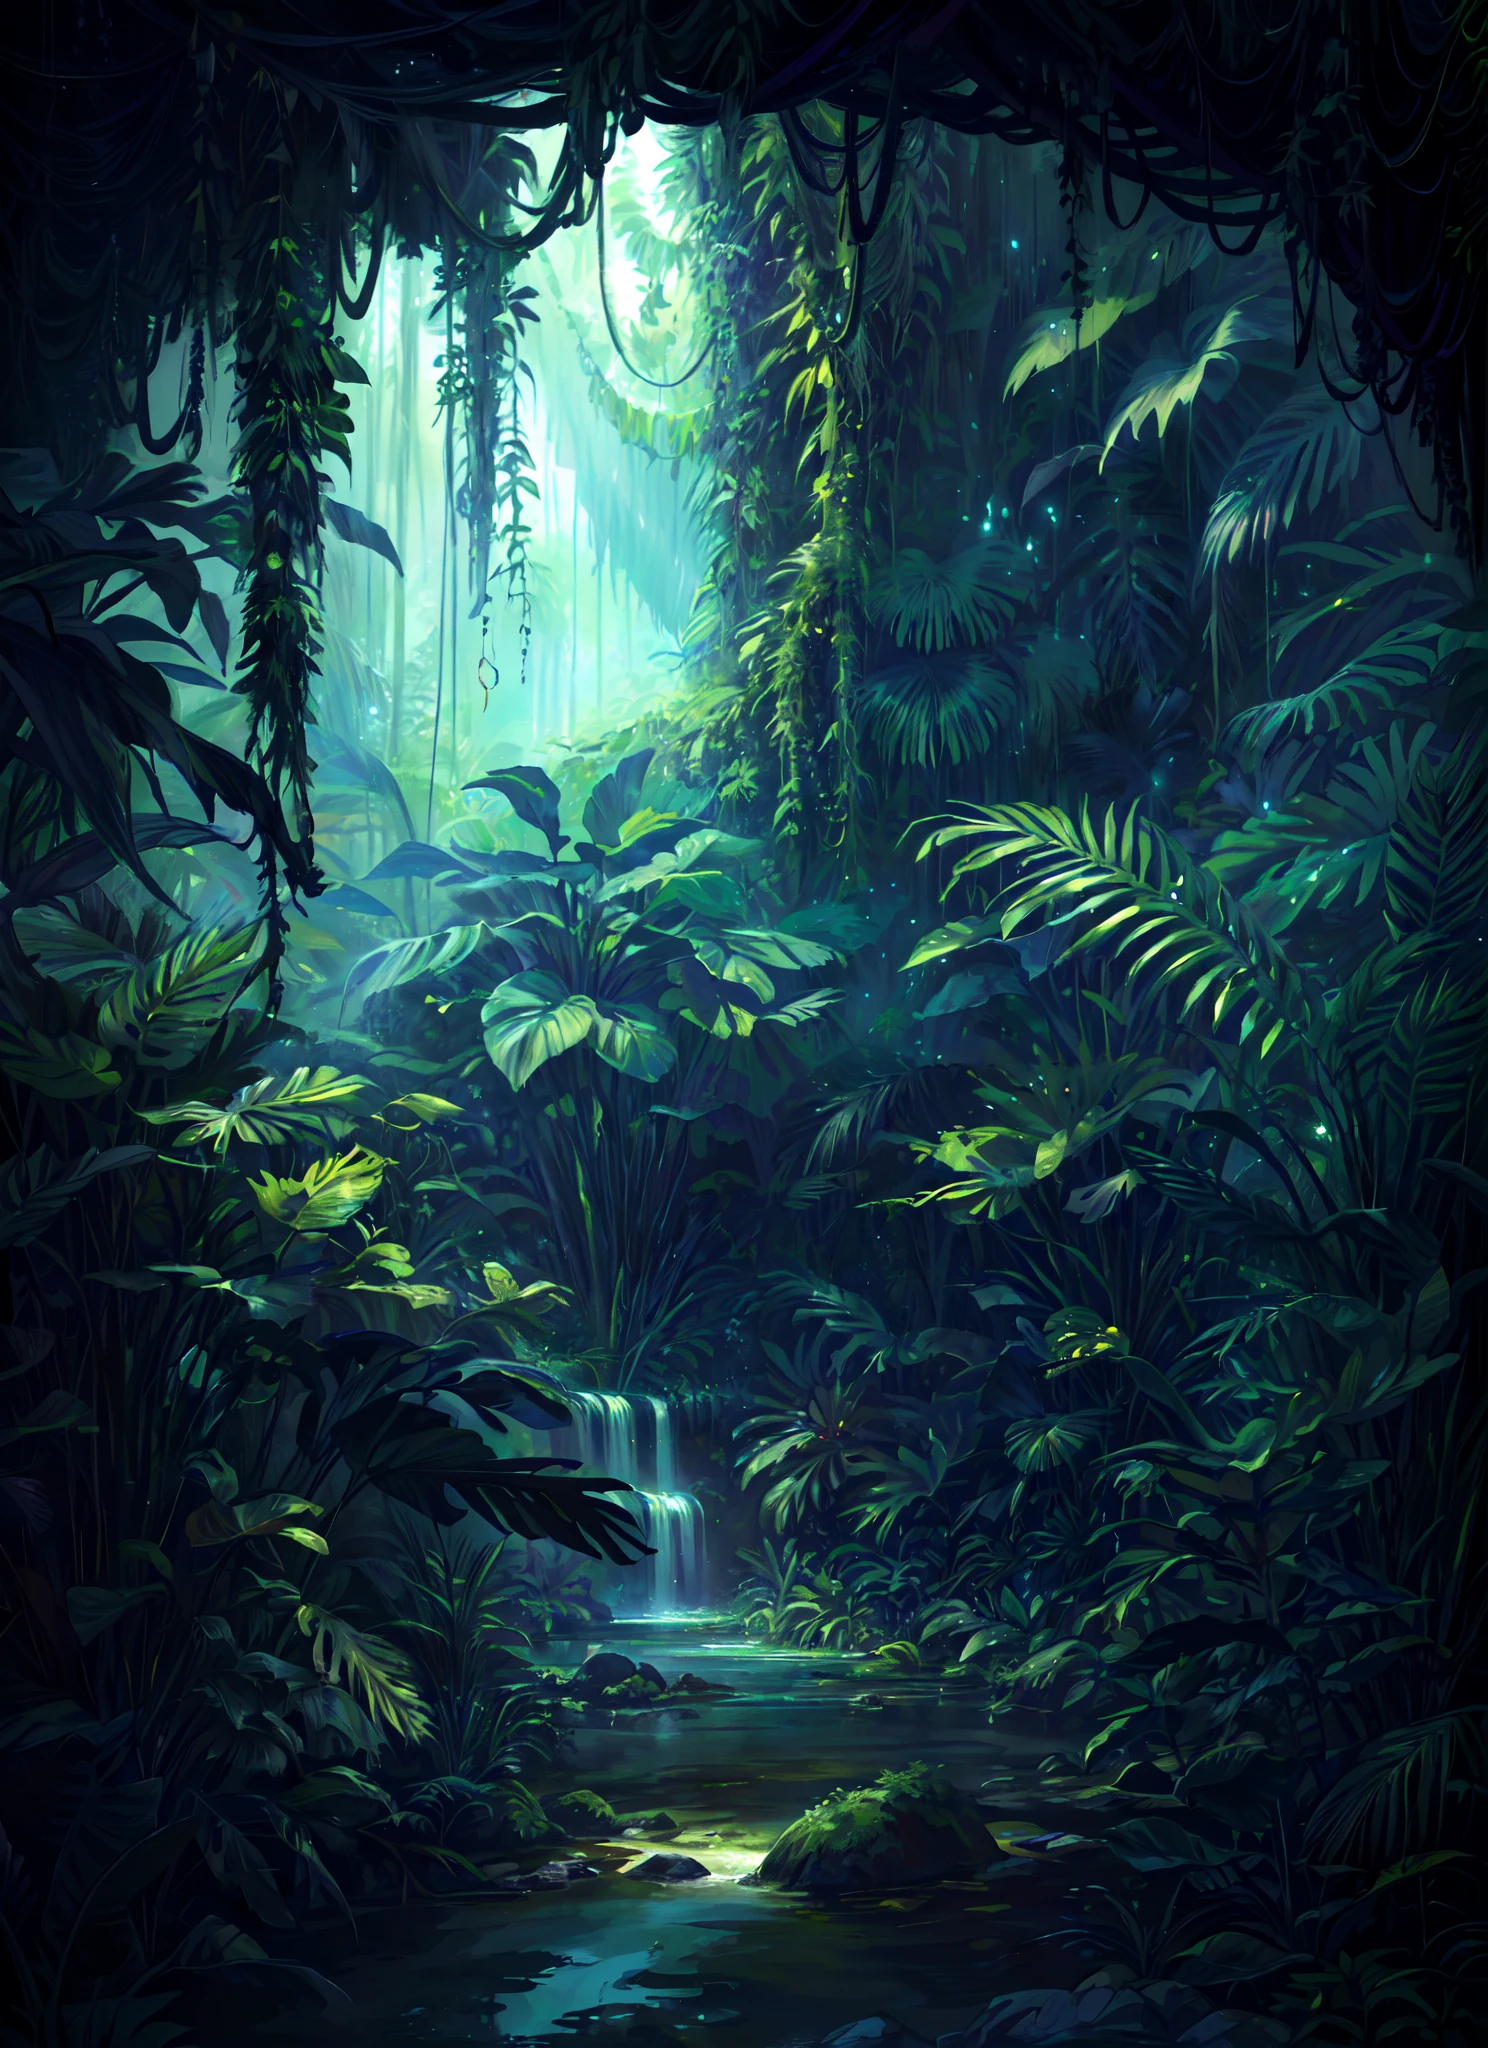 цифровая картина сцены джунглей с ручьем и деревьями, глубокие джунгли из другого мира, фэнтезийные джунгли, art nouveau среда джунглей, глубокая текстура джунглей, среда джунглей, жуткие джунгли, инопланетные джунгли, overgrown среда джунглей, красивые джунгли, Пейзаж джунглей, inside инопланетные джунгли, фон джунгли, под джунглями внешнего мира, загадочная картина джунглей